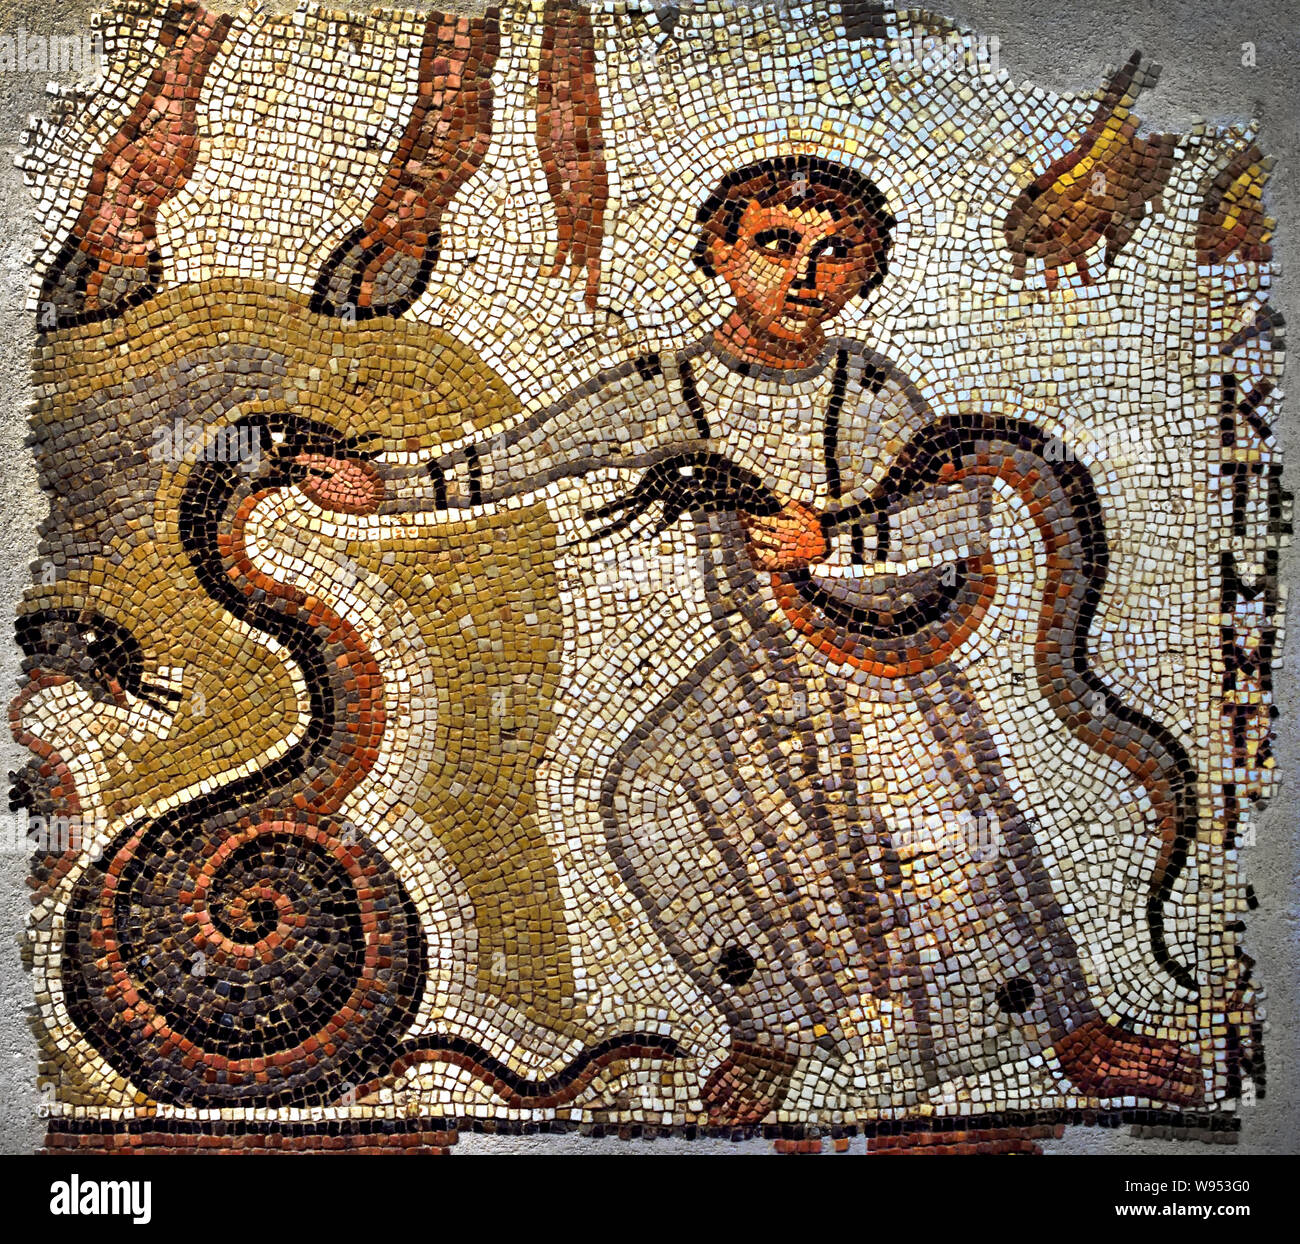 Giovane ragazzo giocando con serpenti Siria in Libano (Persia) mosaico - cubetti di marmo e pietra calcarea del V secolo d.c. Foto Stock